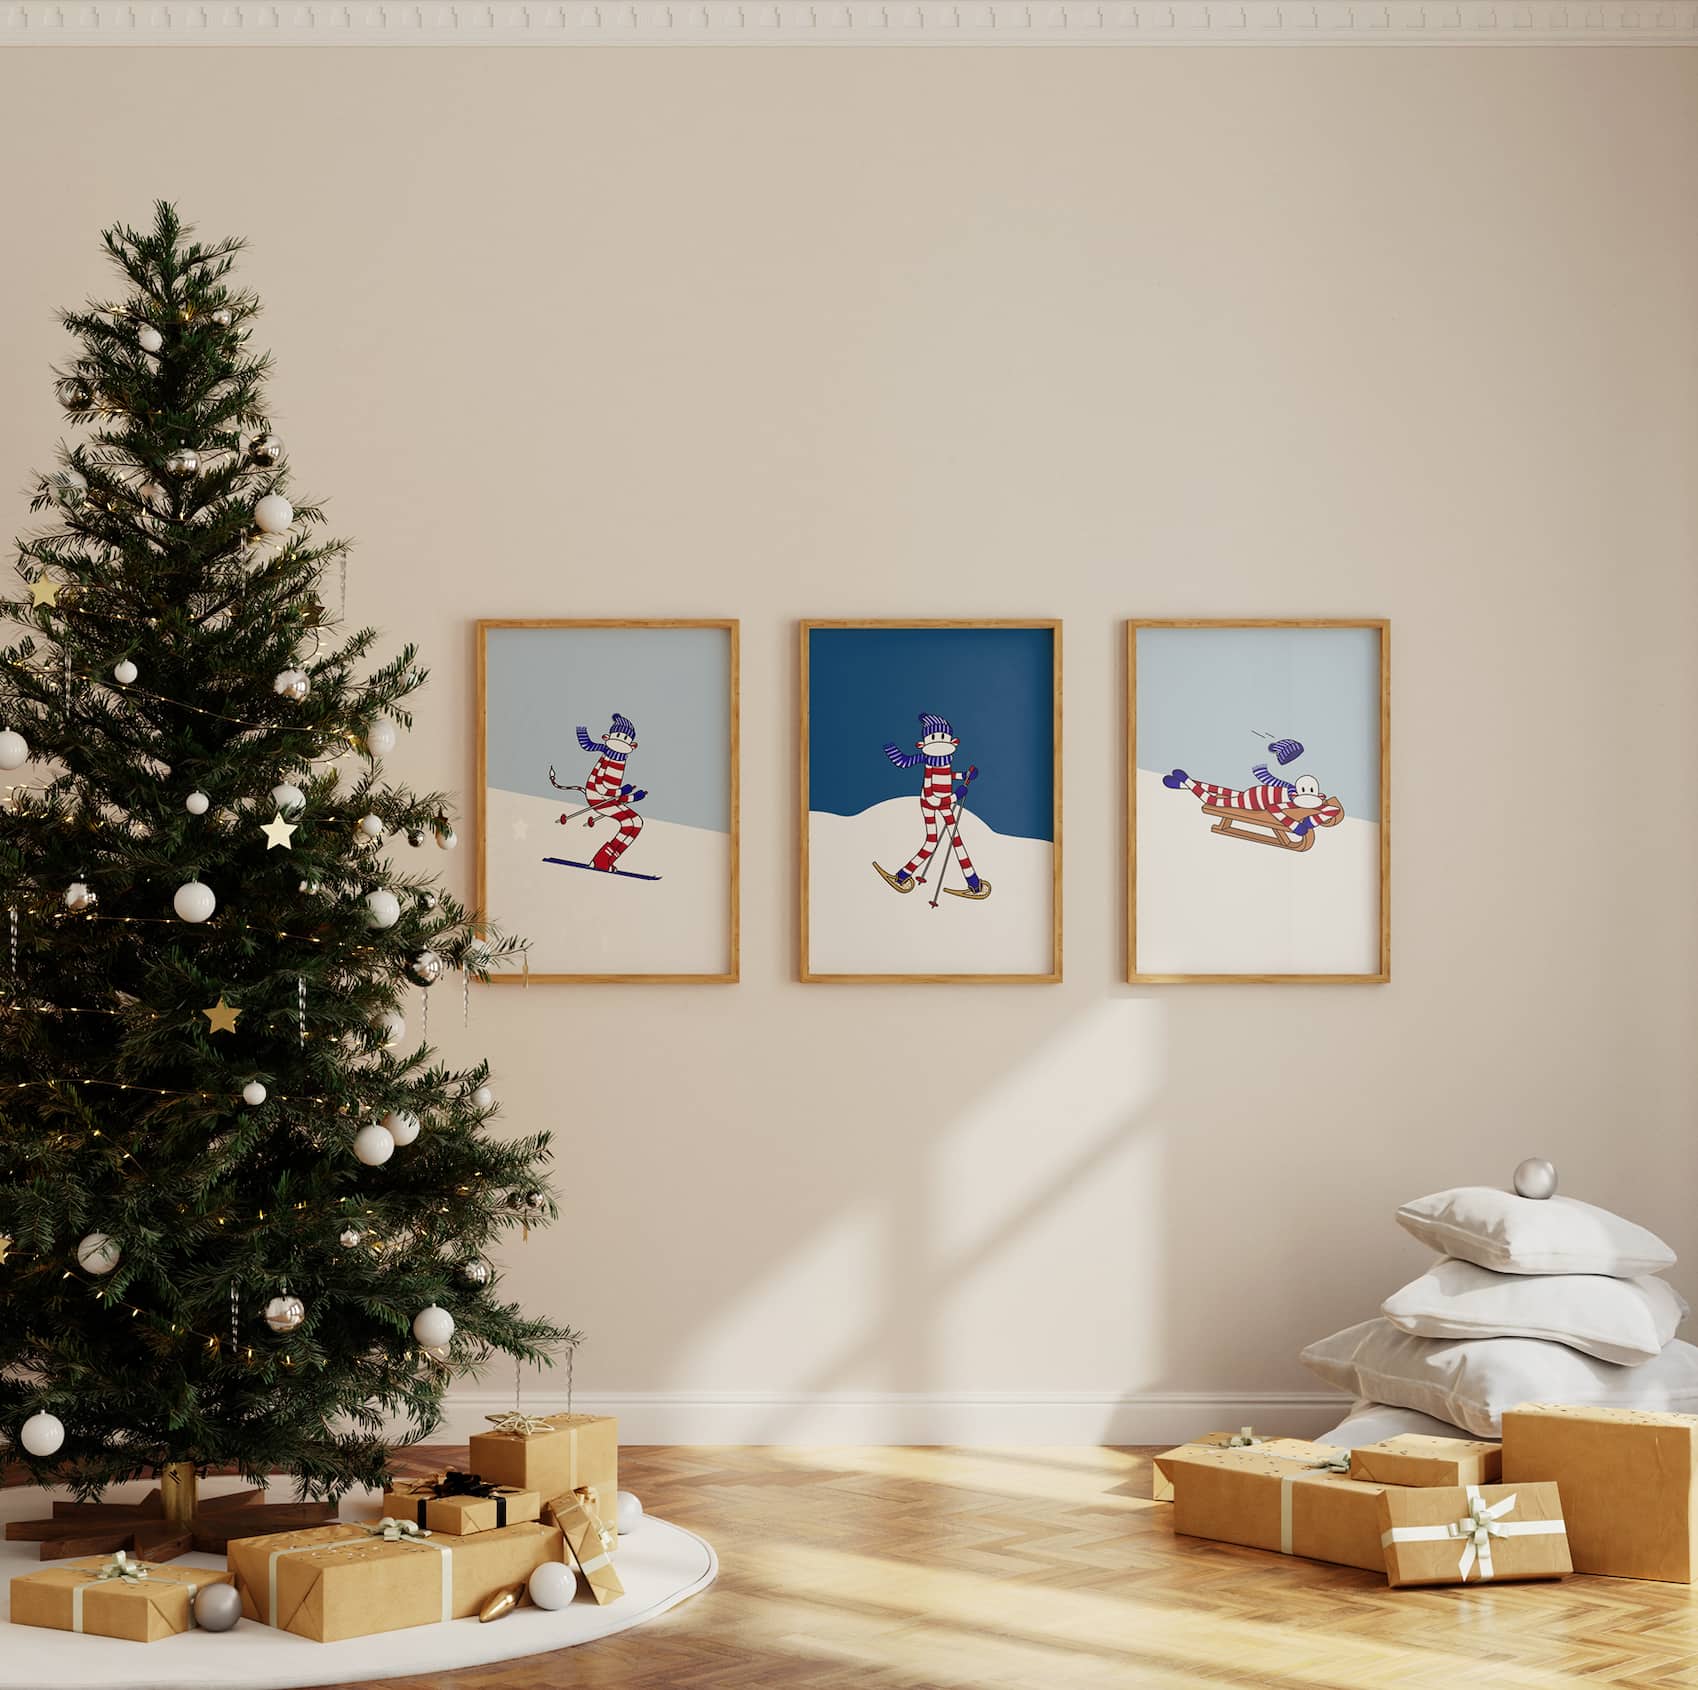 ensemble de tableaux de noël représentant des scénes de sport d'hiver pour enfant dans une ambiance chaleureuse de noel chic